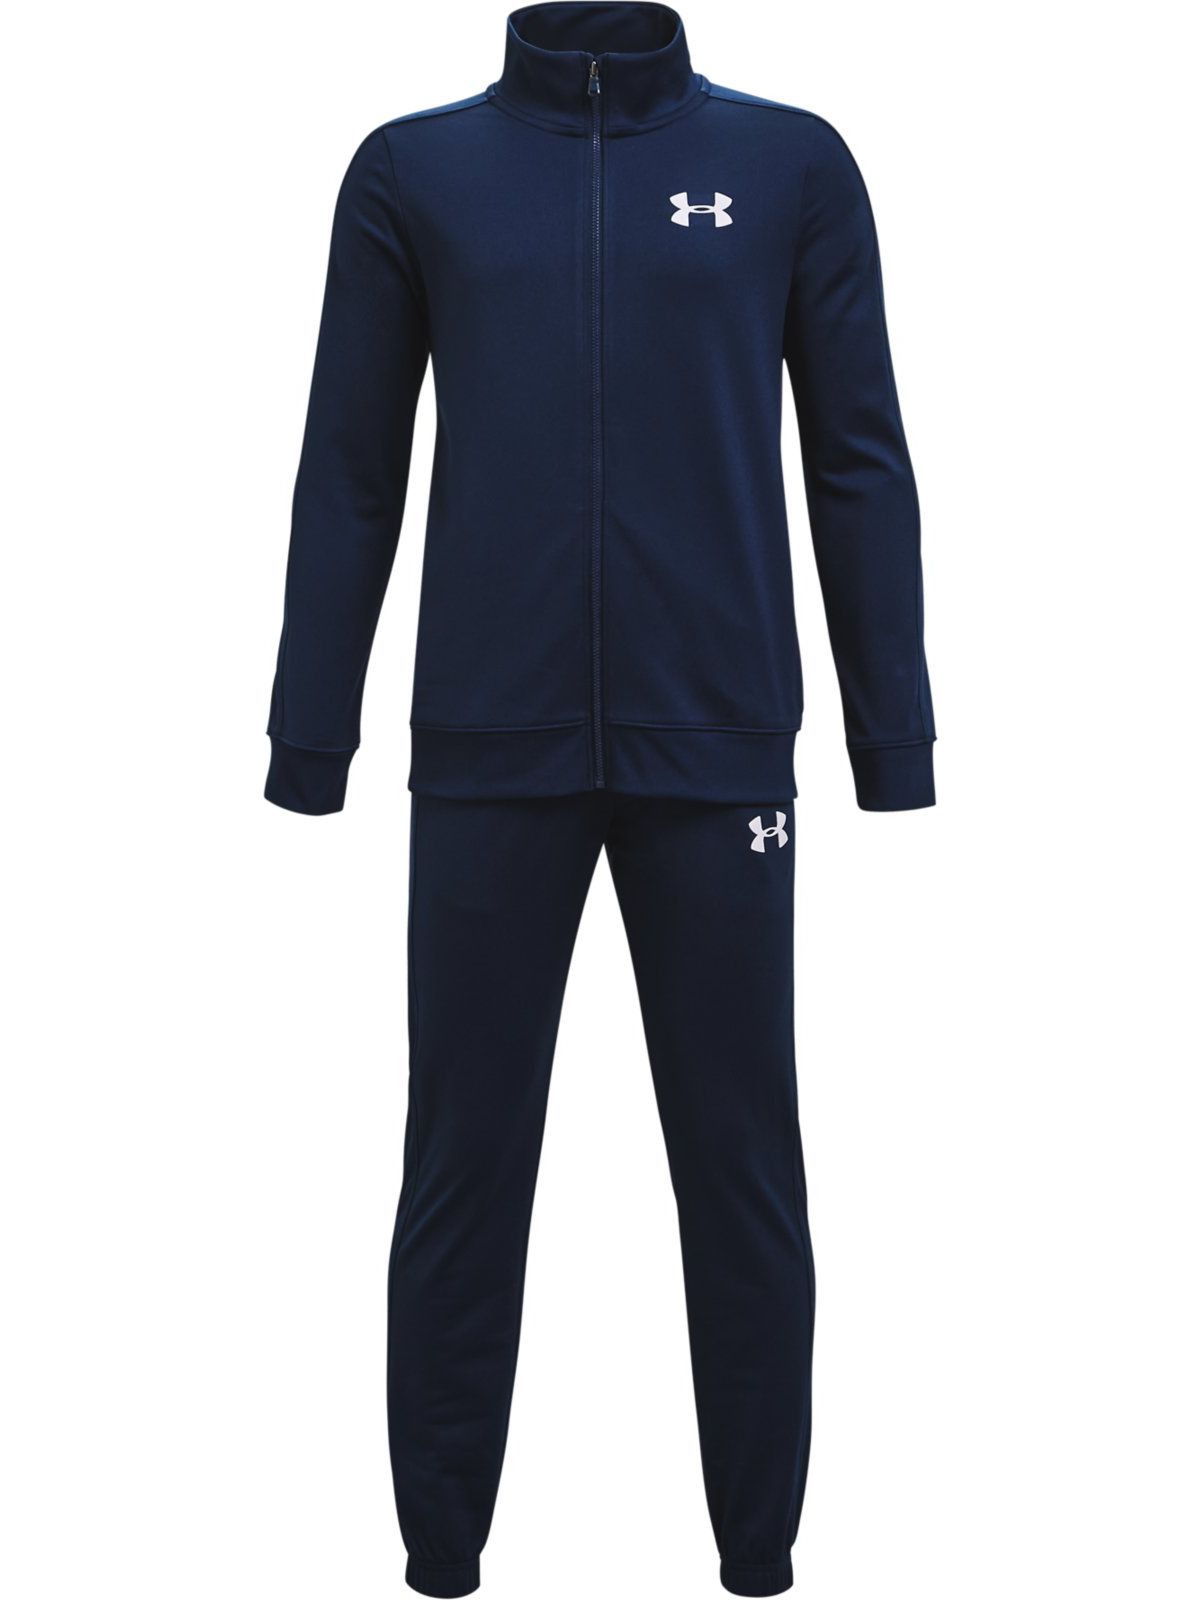 Спортивный костюм Under Armour Knit Track Suit 1363290-408 цв.синий р. YXS